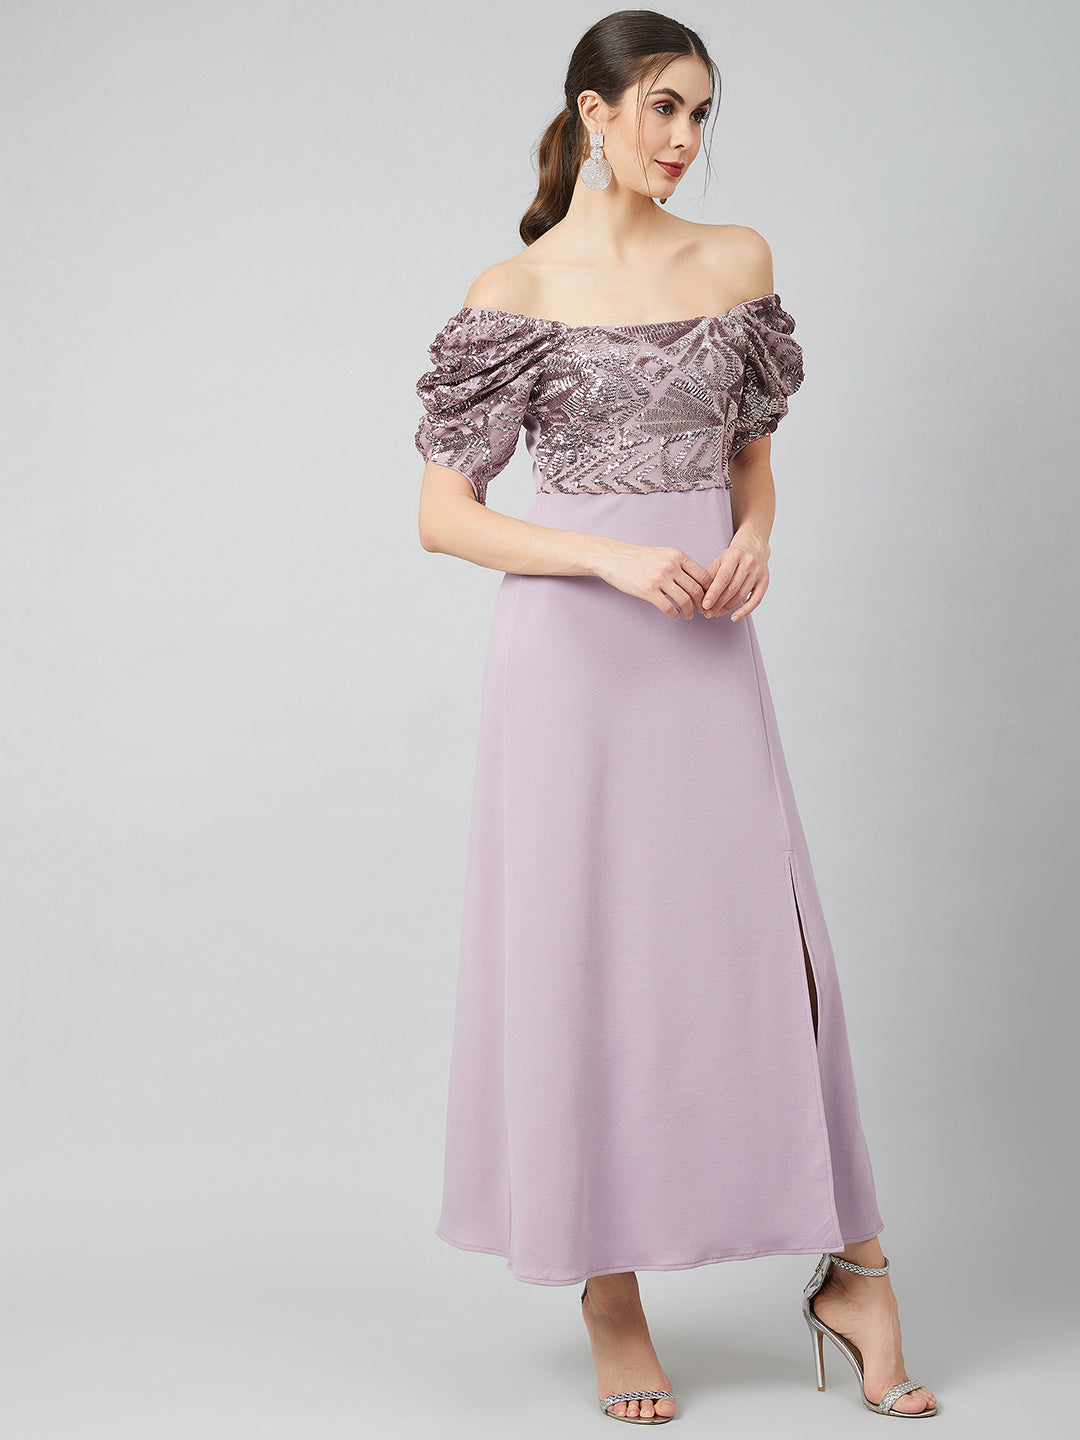 Athena Women Lavender Embellished Maxi Dress - Athena Lifestyle